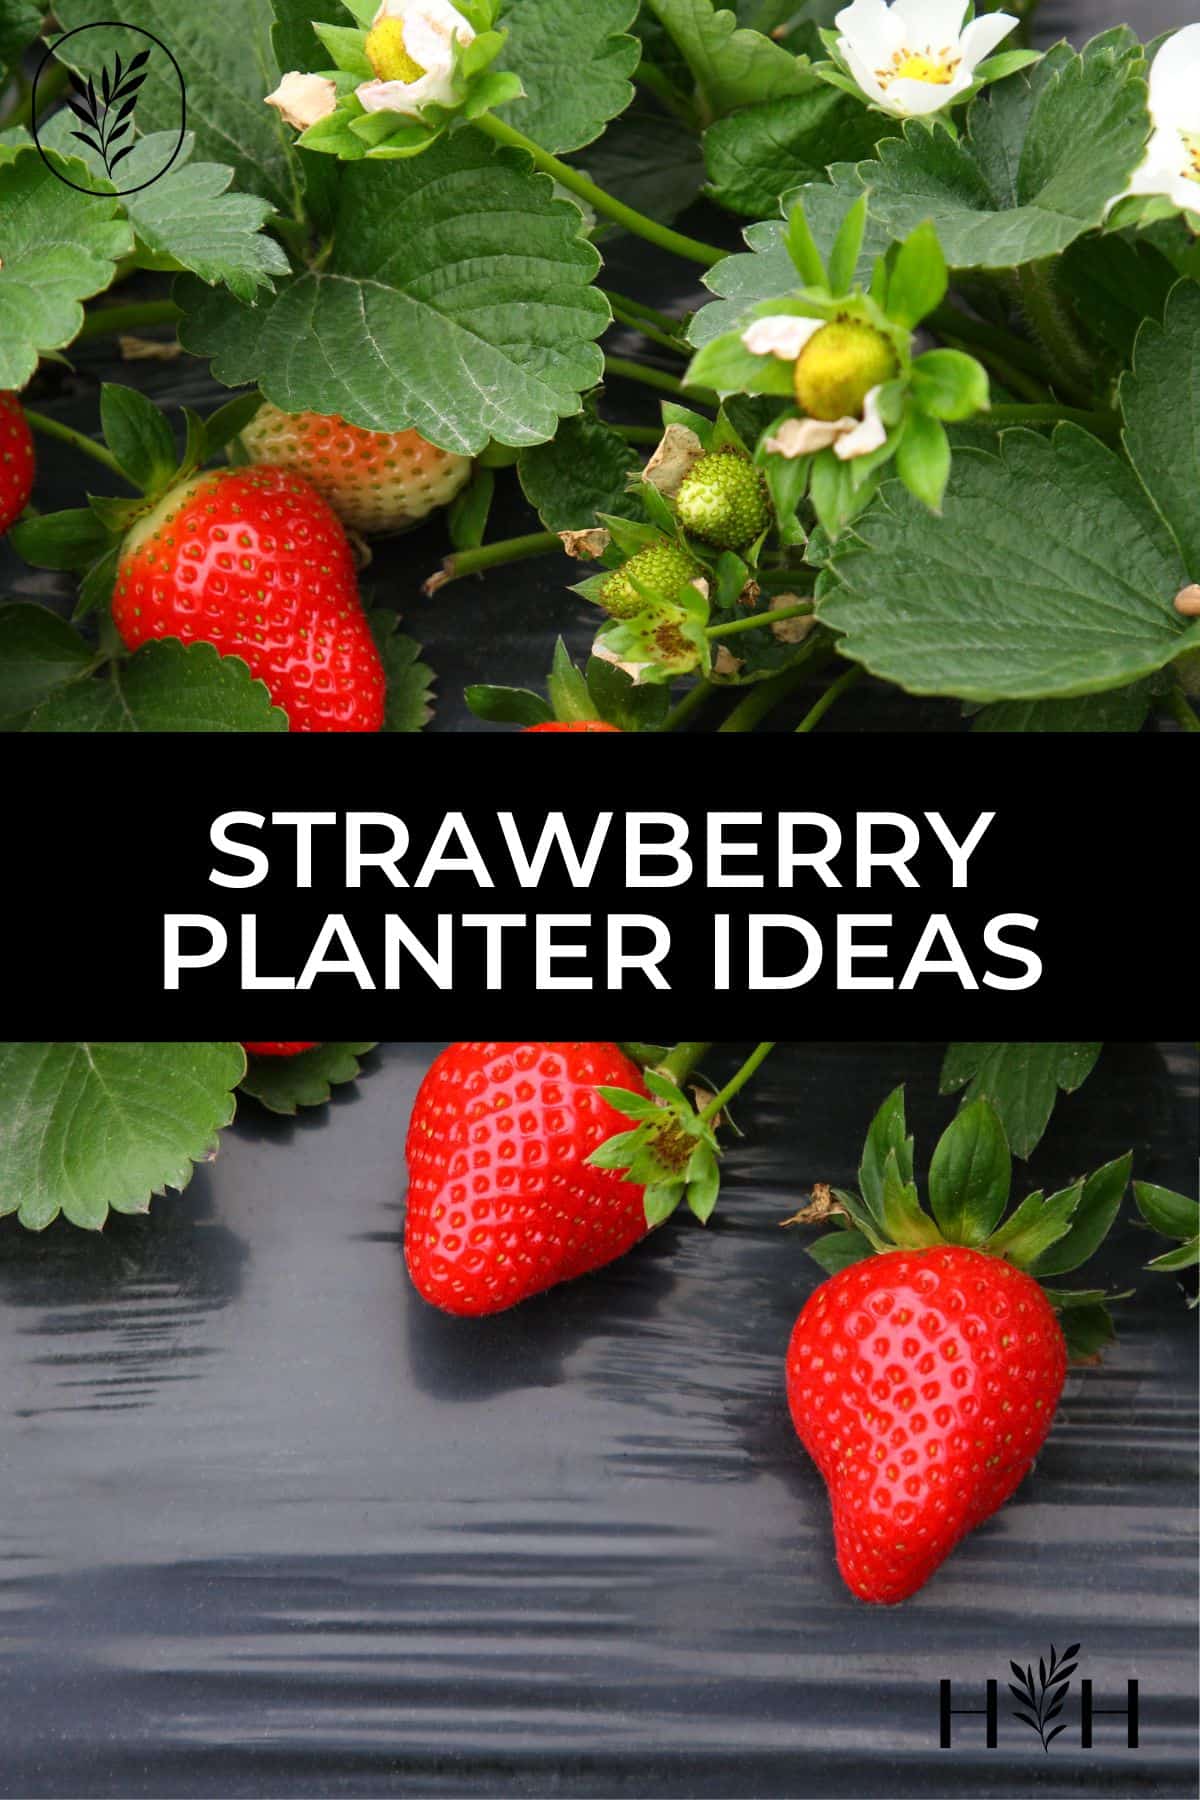 Strawberry planter ideas via @home4theharvest